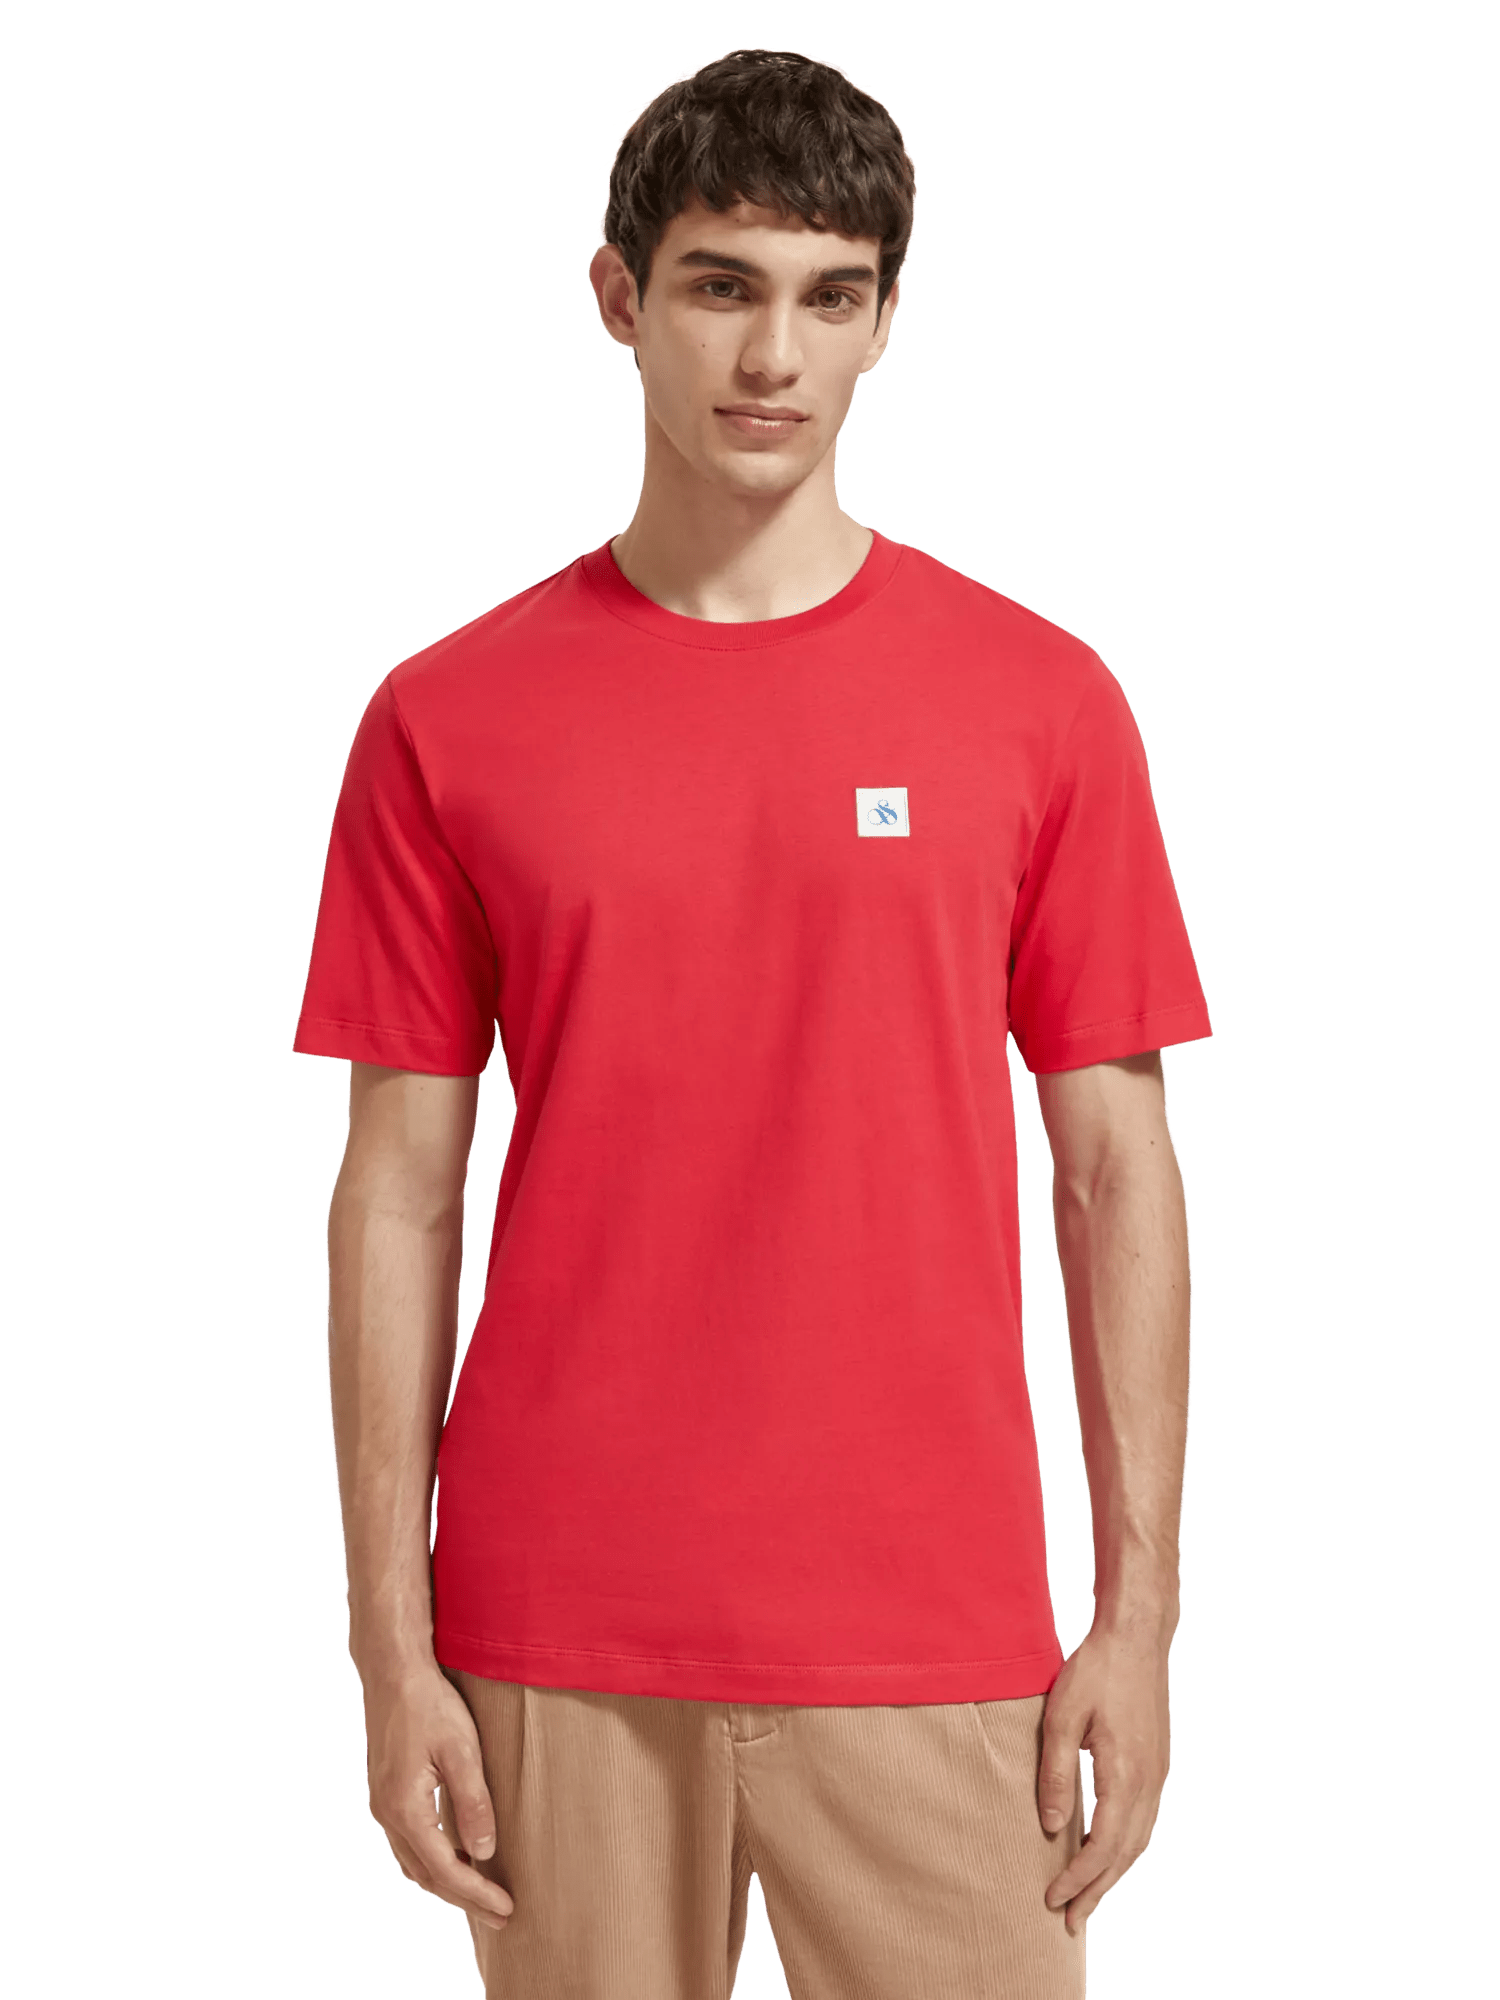 Essential Slim Organic Cotton T-Shirt